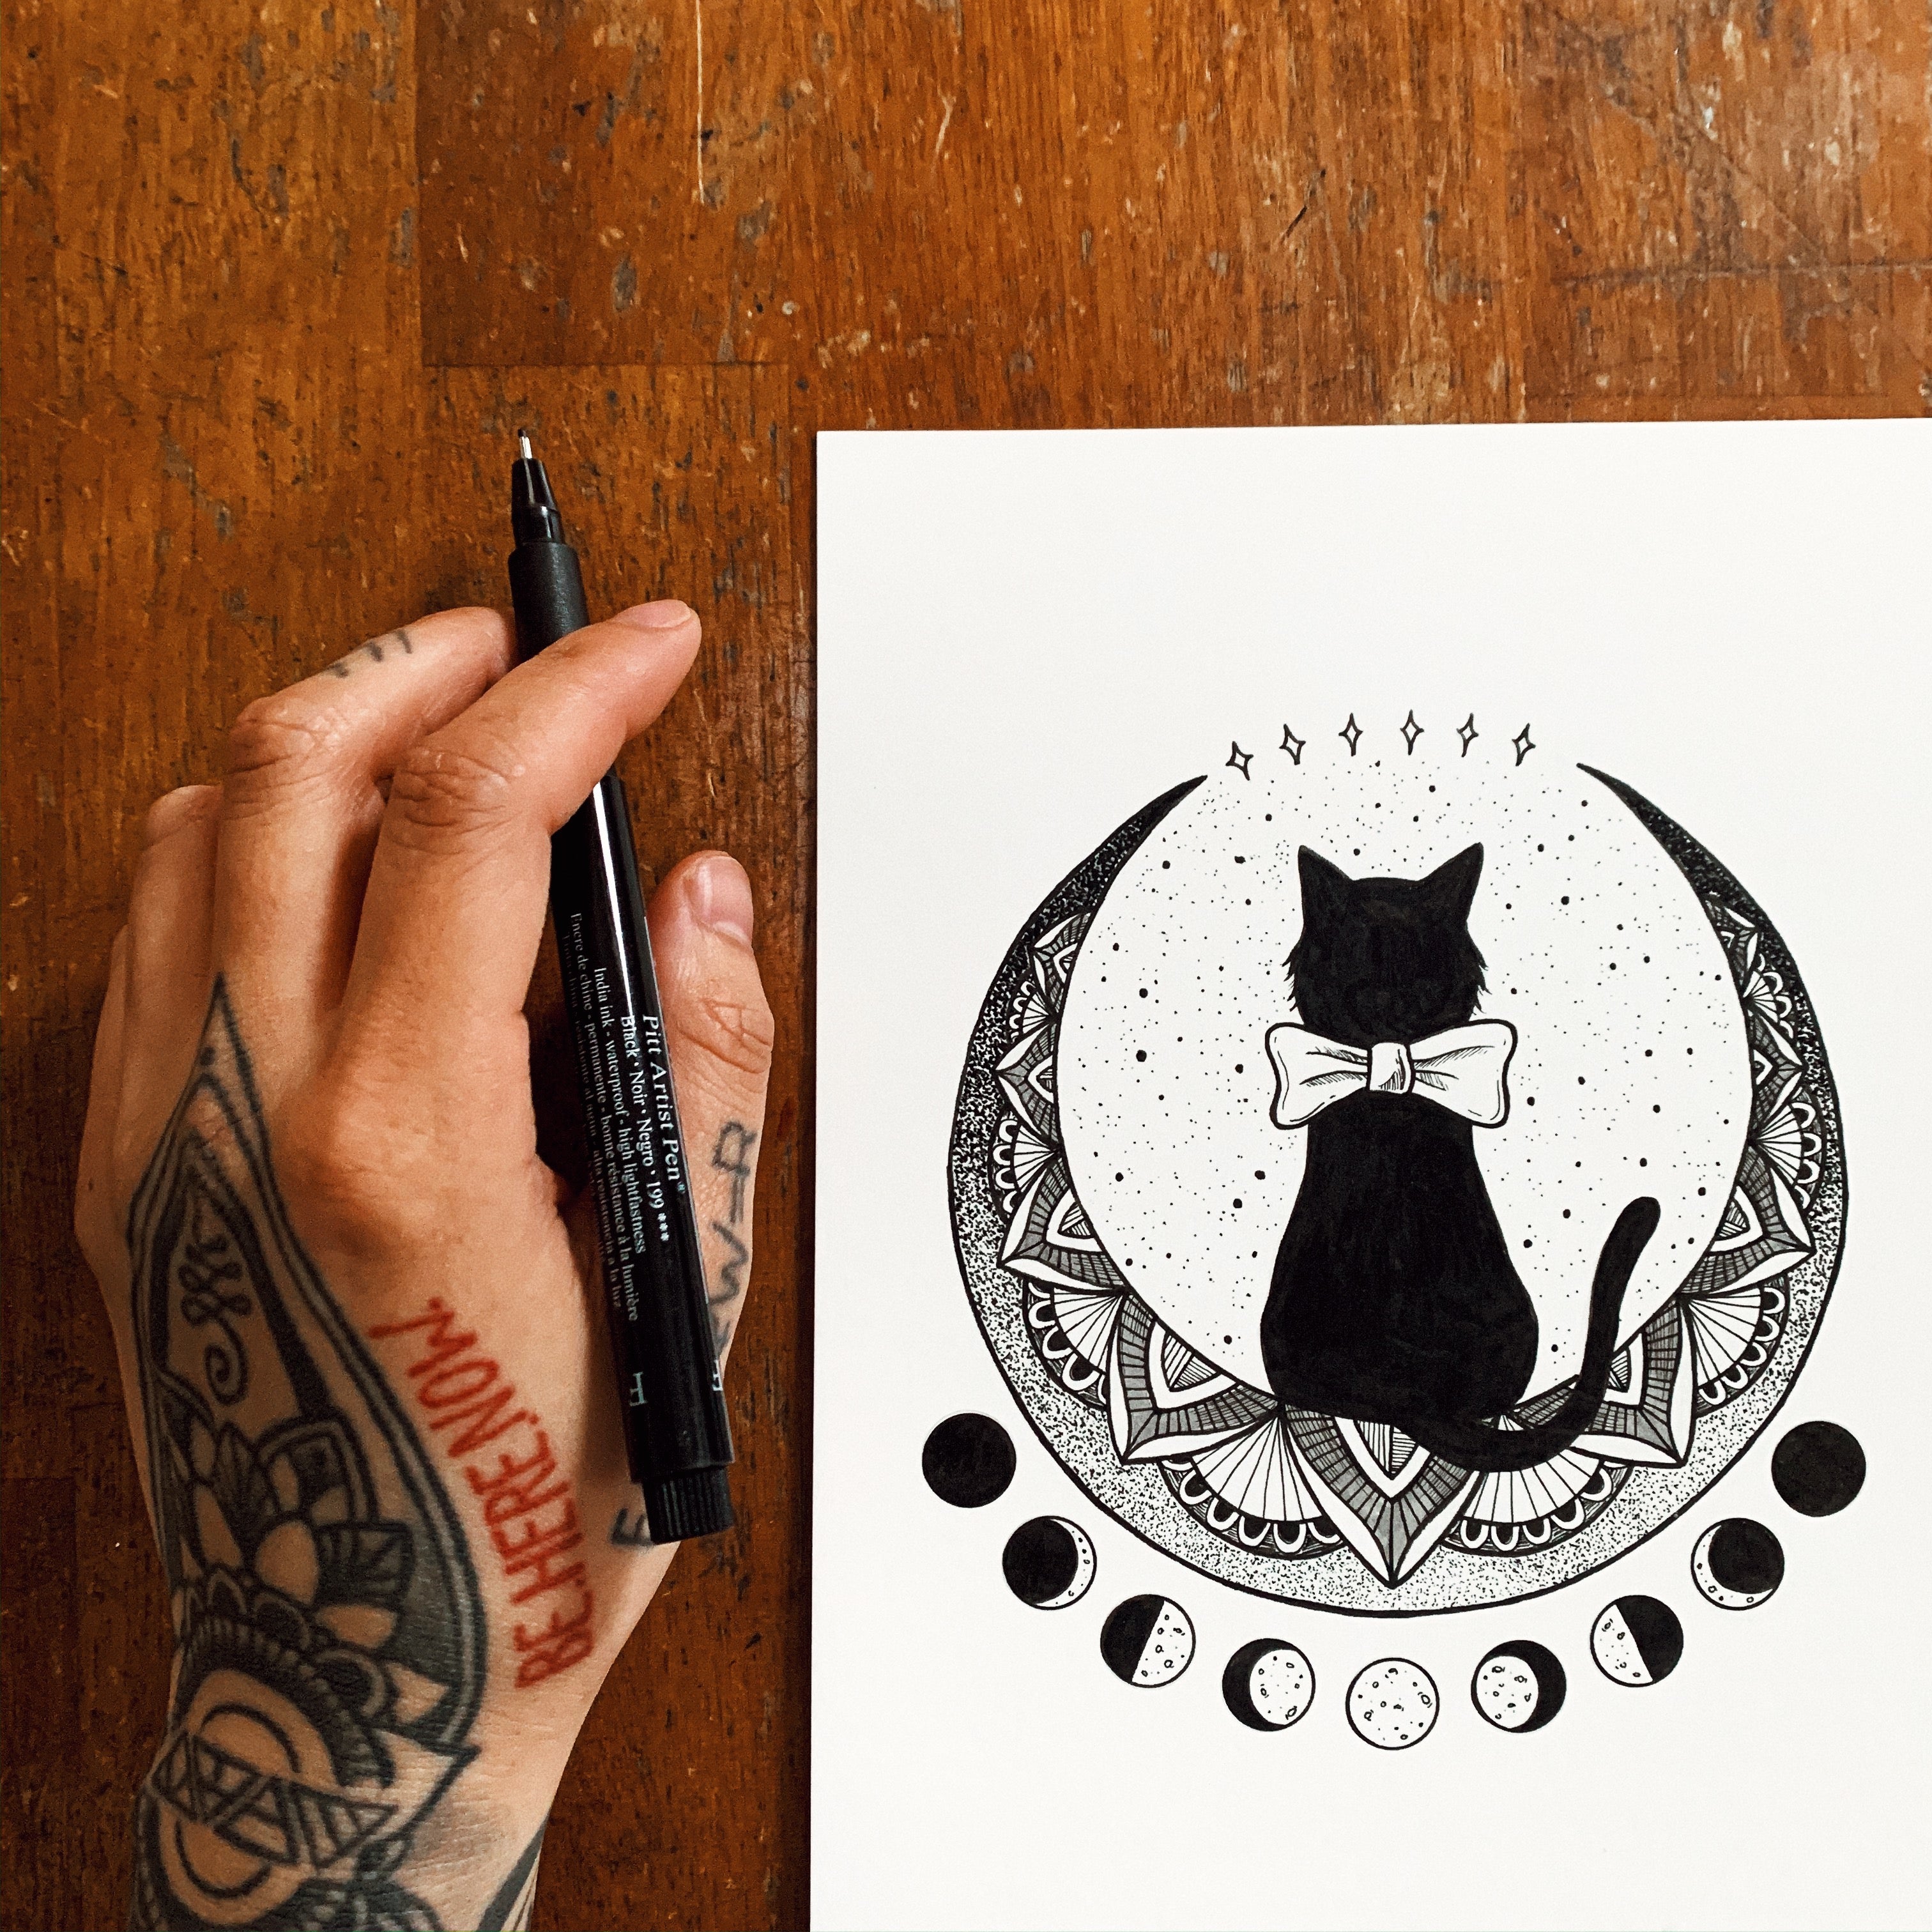 Crescent moon cat tattoo by Jess at Voodoo Lounge Tattoo Studio Carlisle UK  : r/tattoos